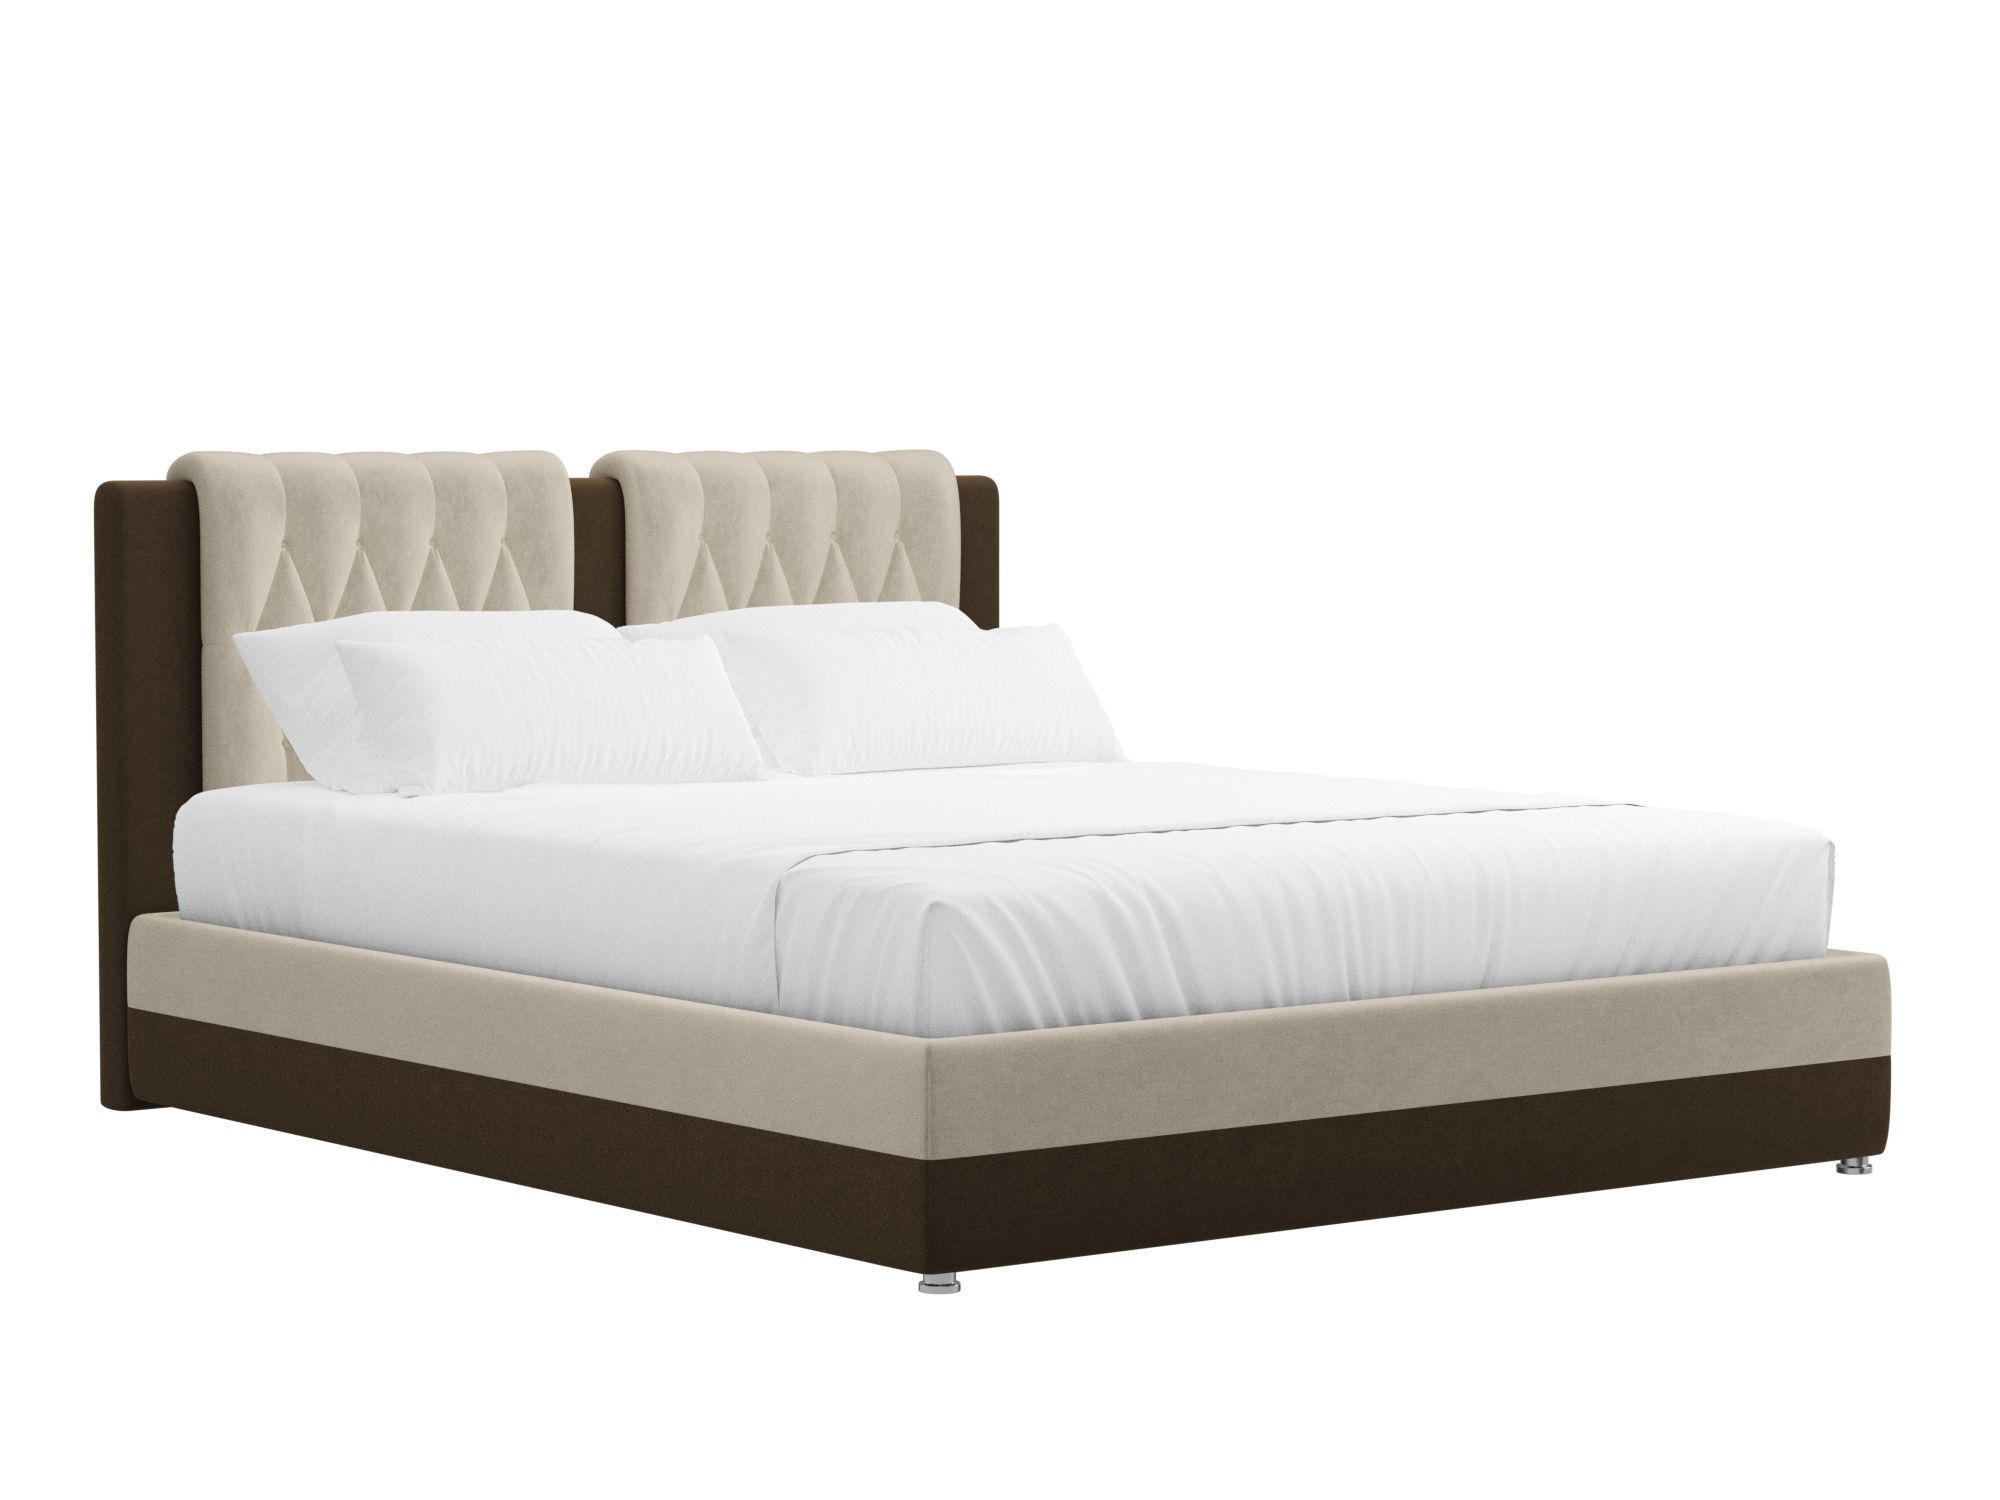 Кровать Камилла (160x200) Бежевый, Коричневый, ЛДСП интерьерная кровать артмебель камилла микровельвет бежево коричневый